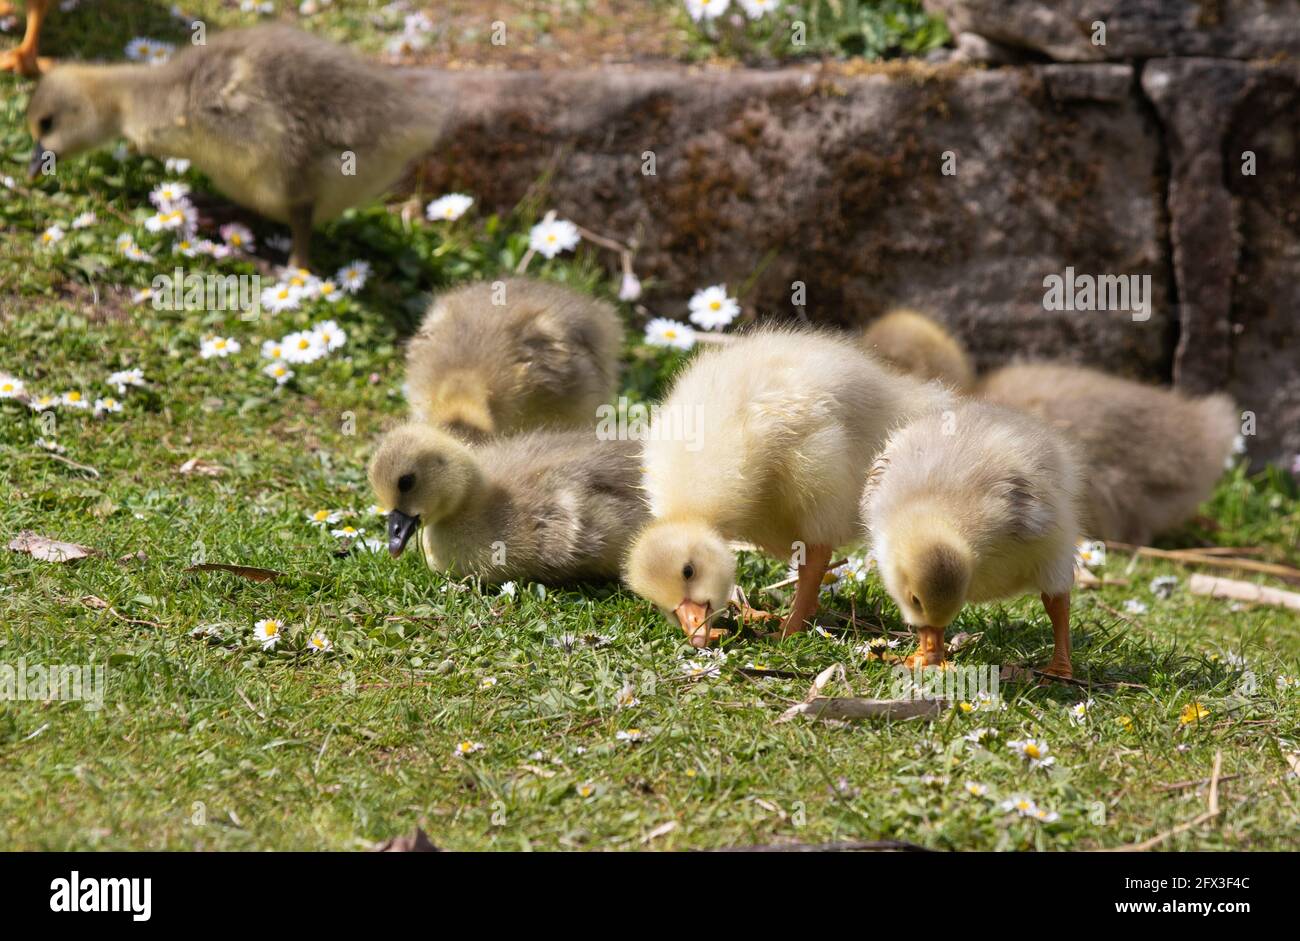 Un groupe de gossins moelleux mignons mangeant de l'herbe Banque D'Images